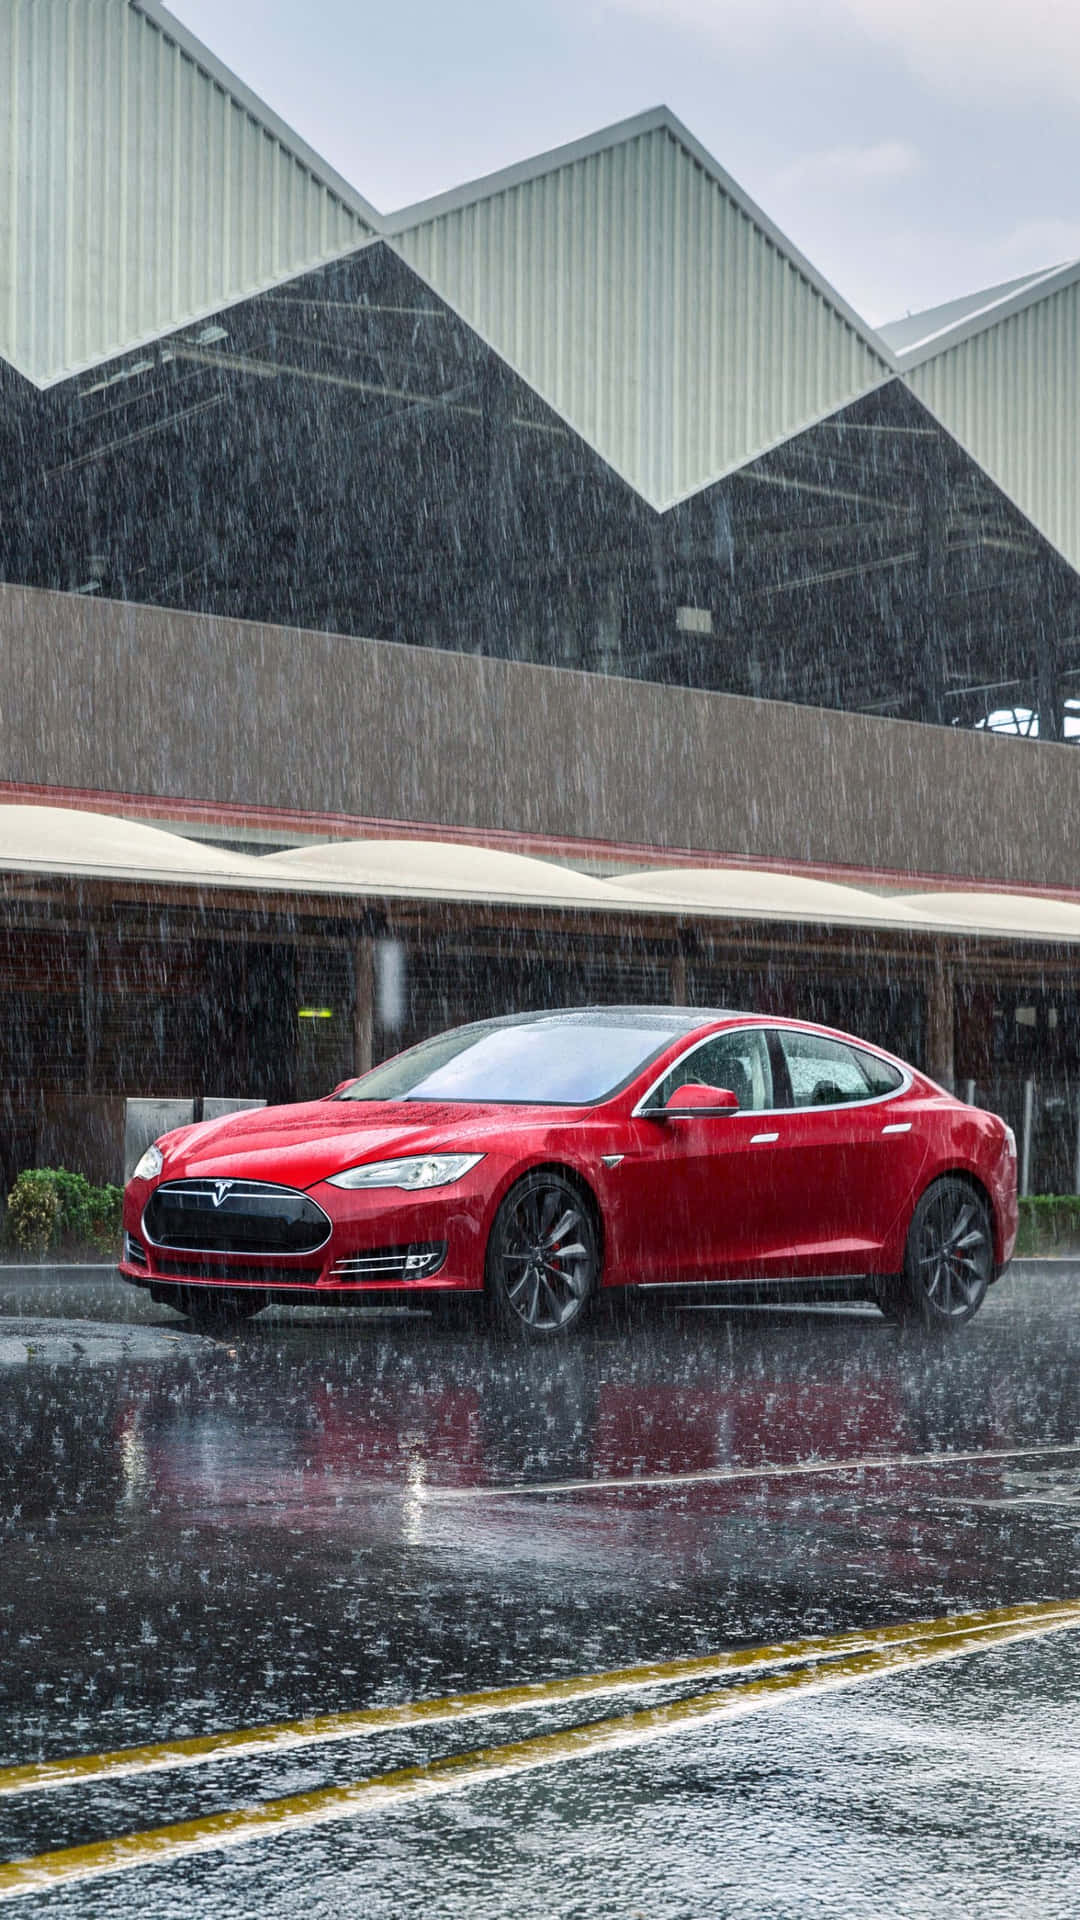 Teslamodel S I Regnet. Wallpaper